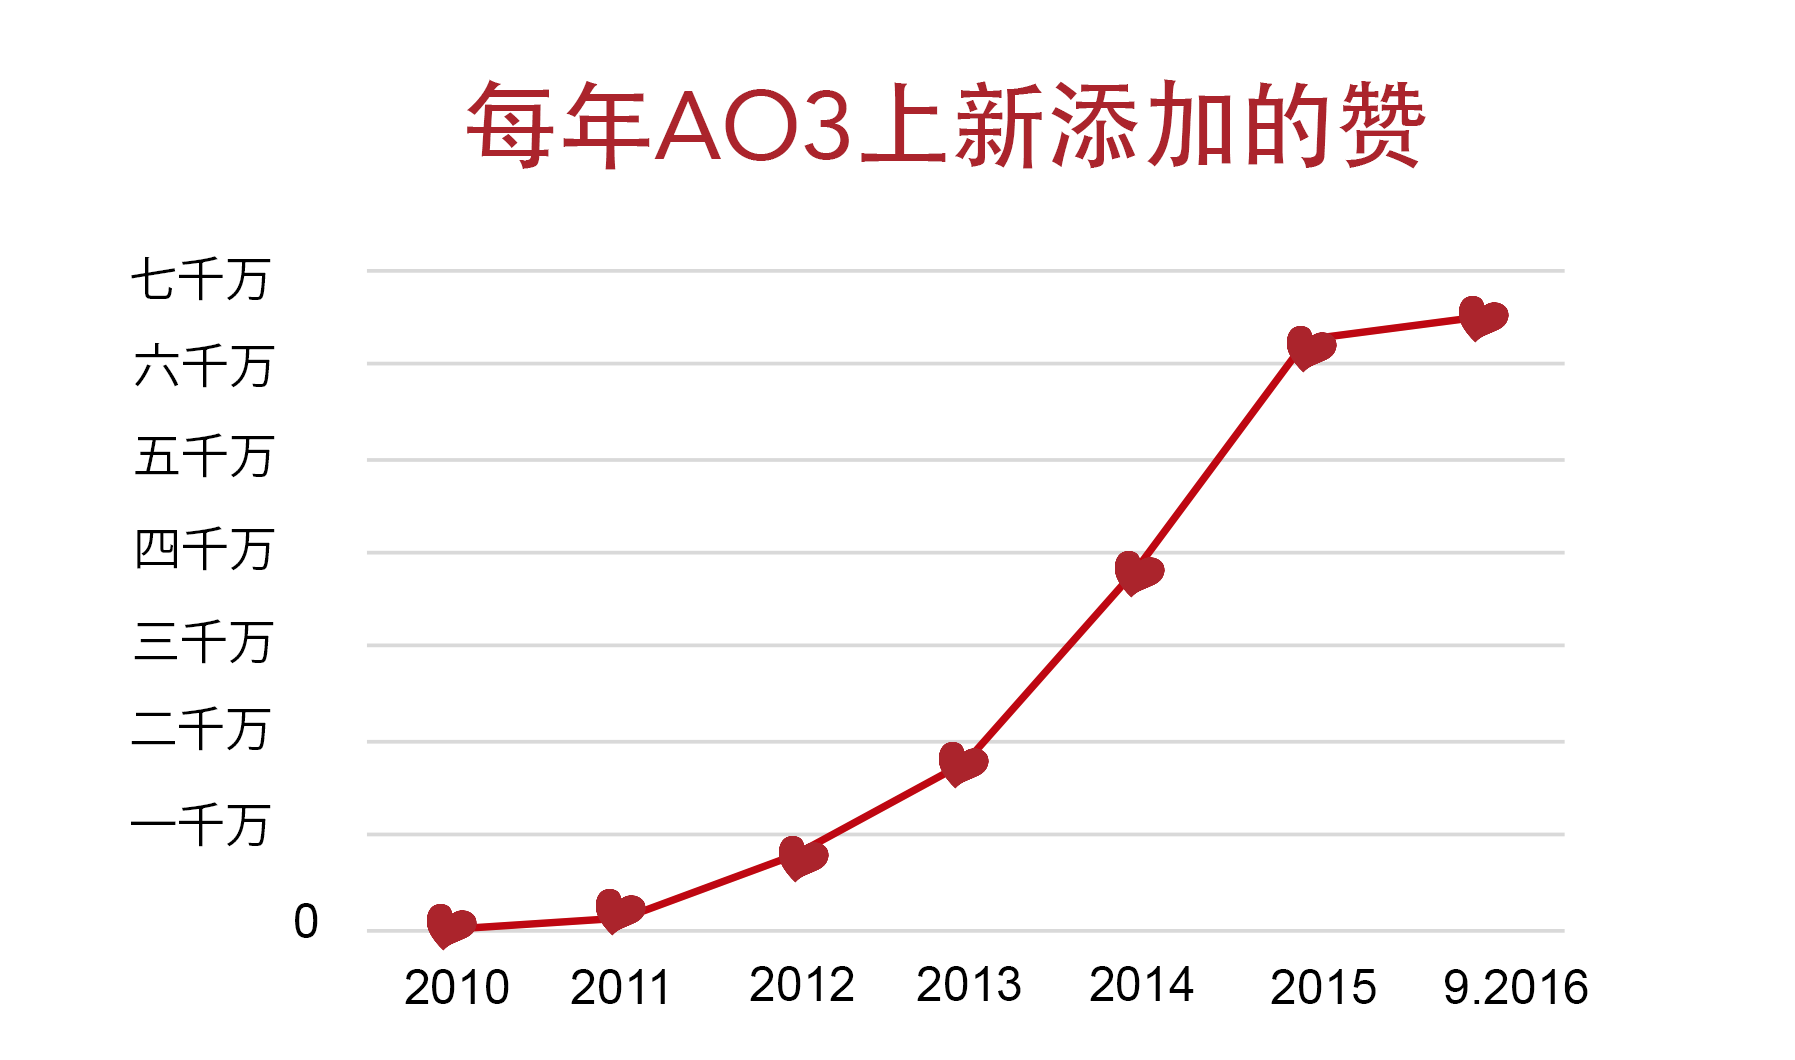 AO3上点赞的增长图表，从2010年的零到今年九月超越六千万